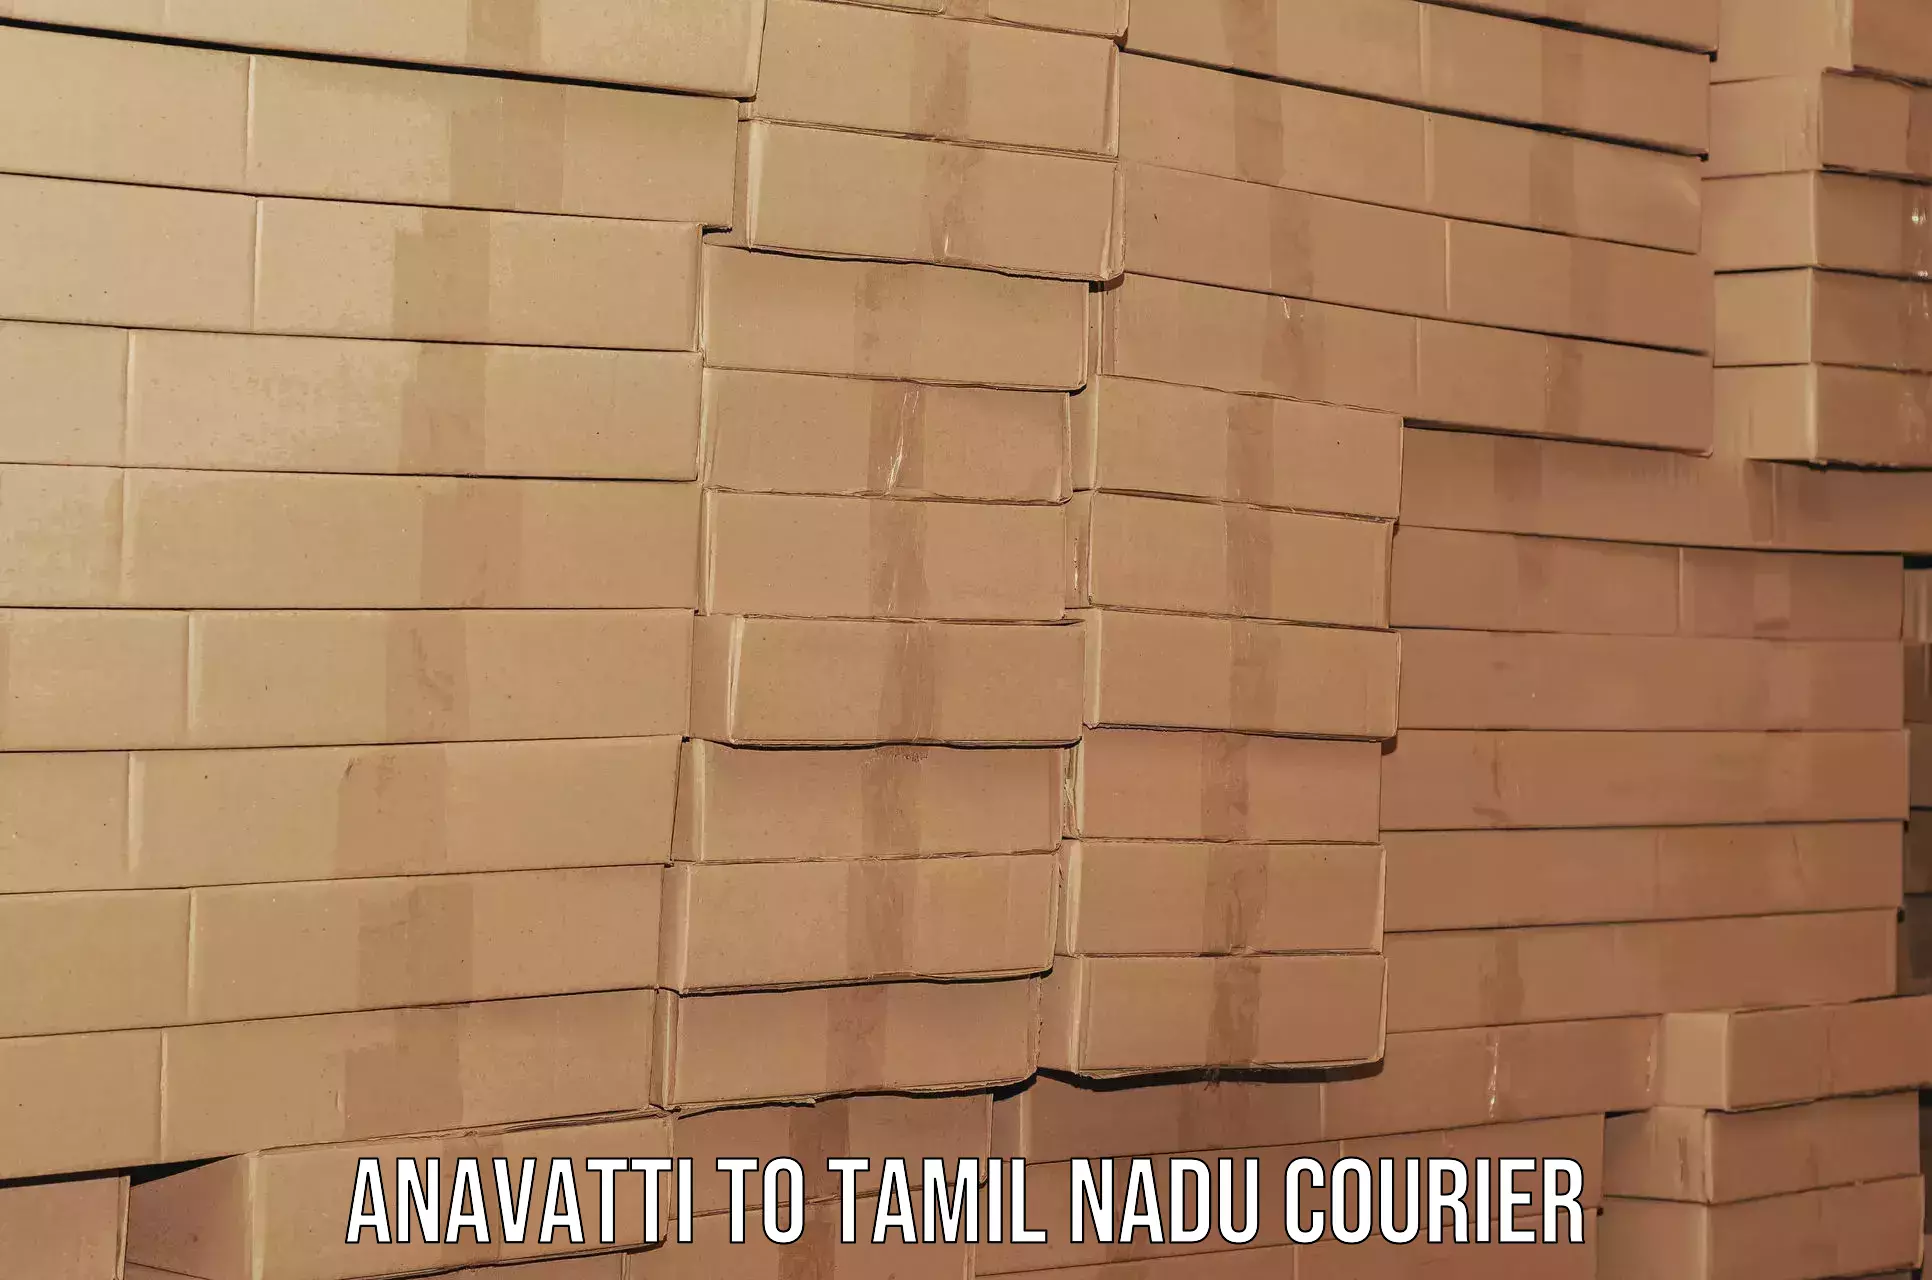 Household logistics services Anavatti to IIIT Tiruchirappalli